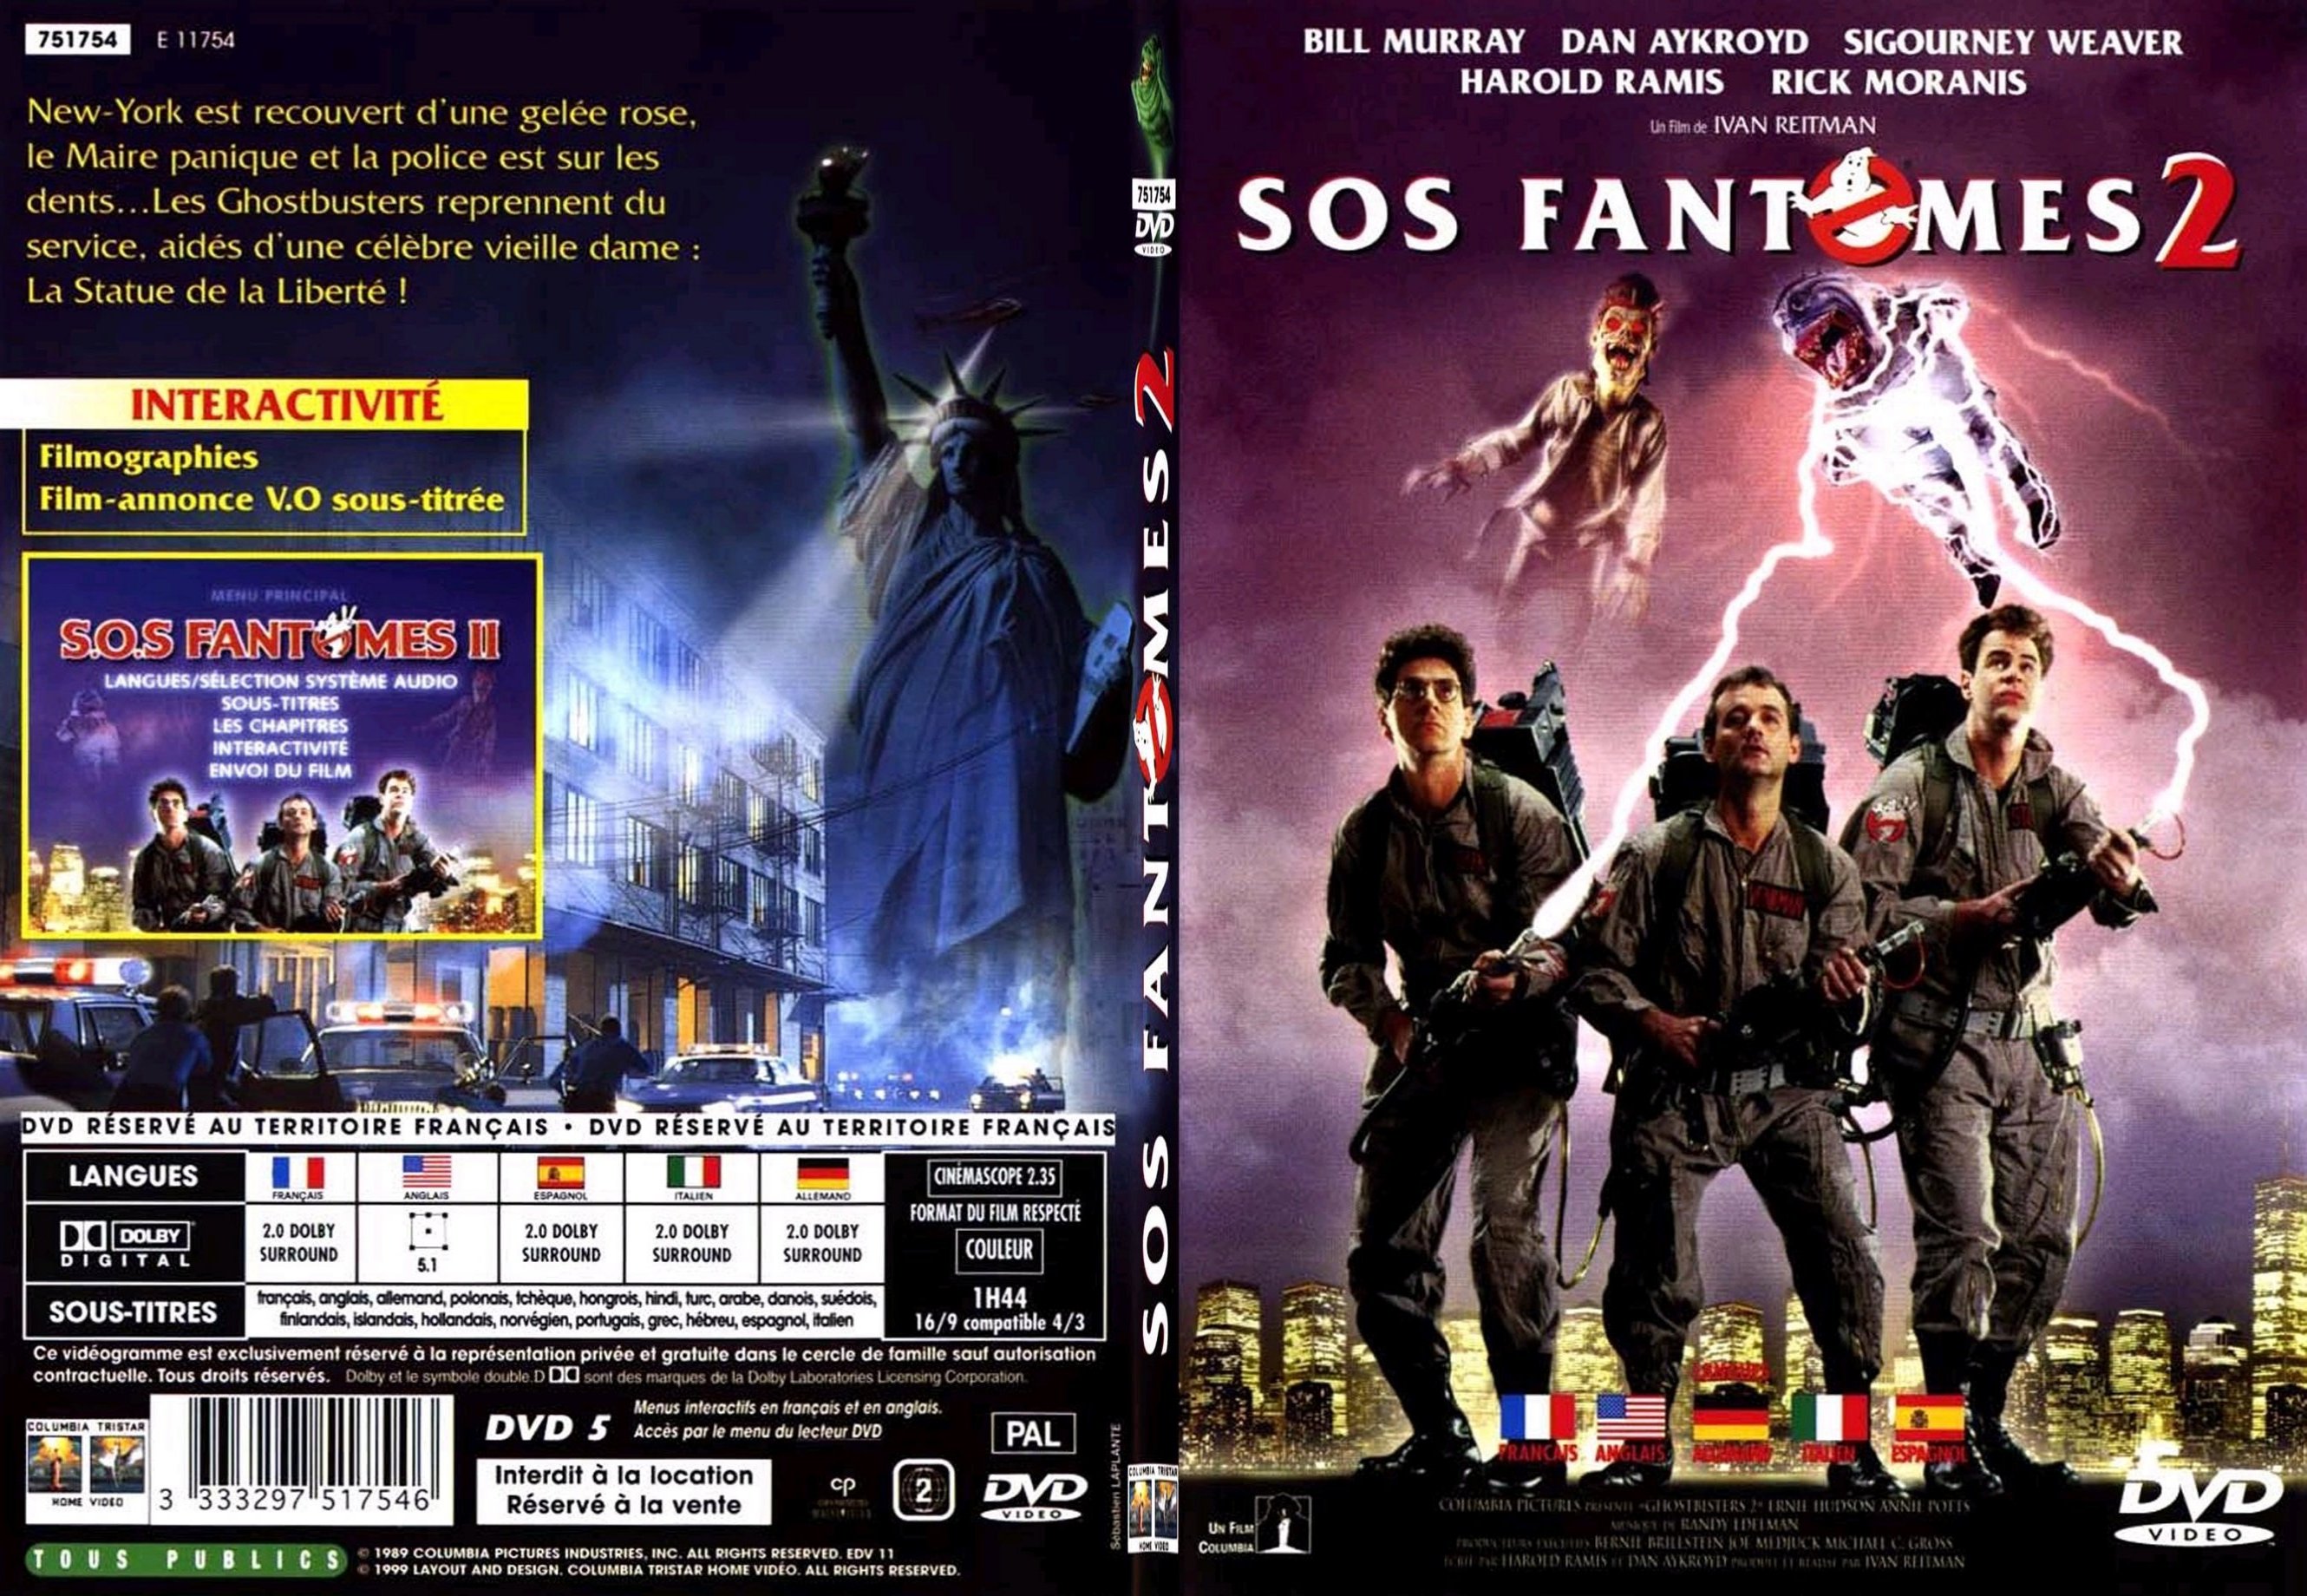 Jaquette DVD SOS Fantomes 2 v2 - SLIM